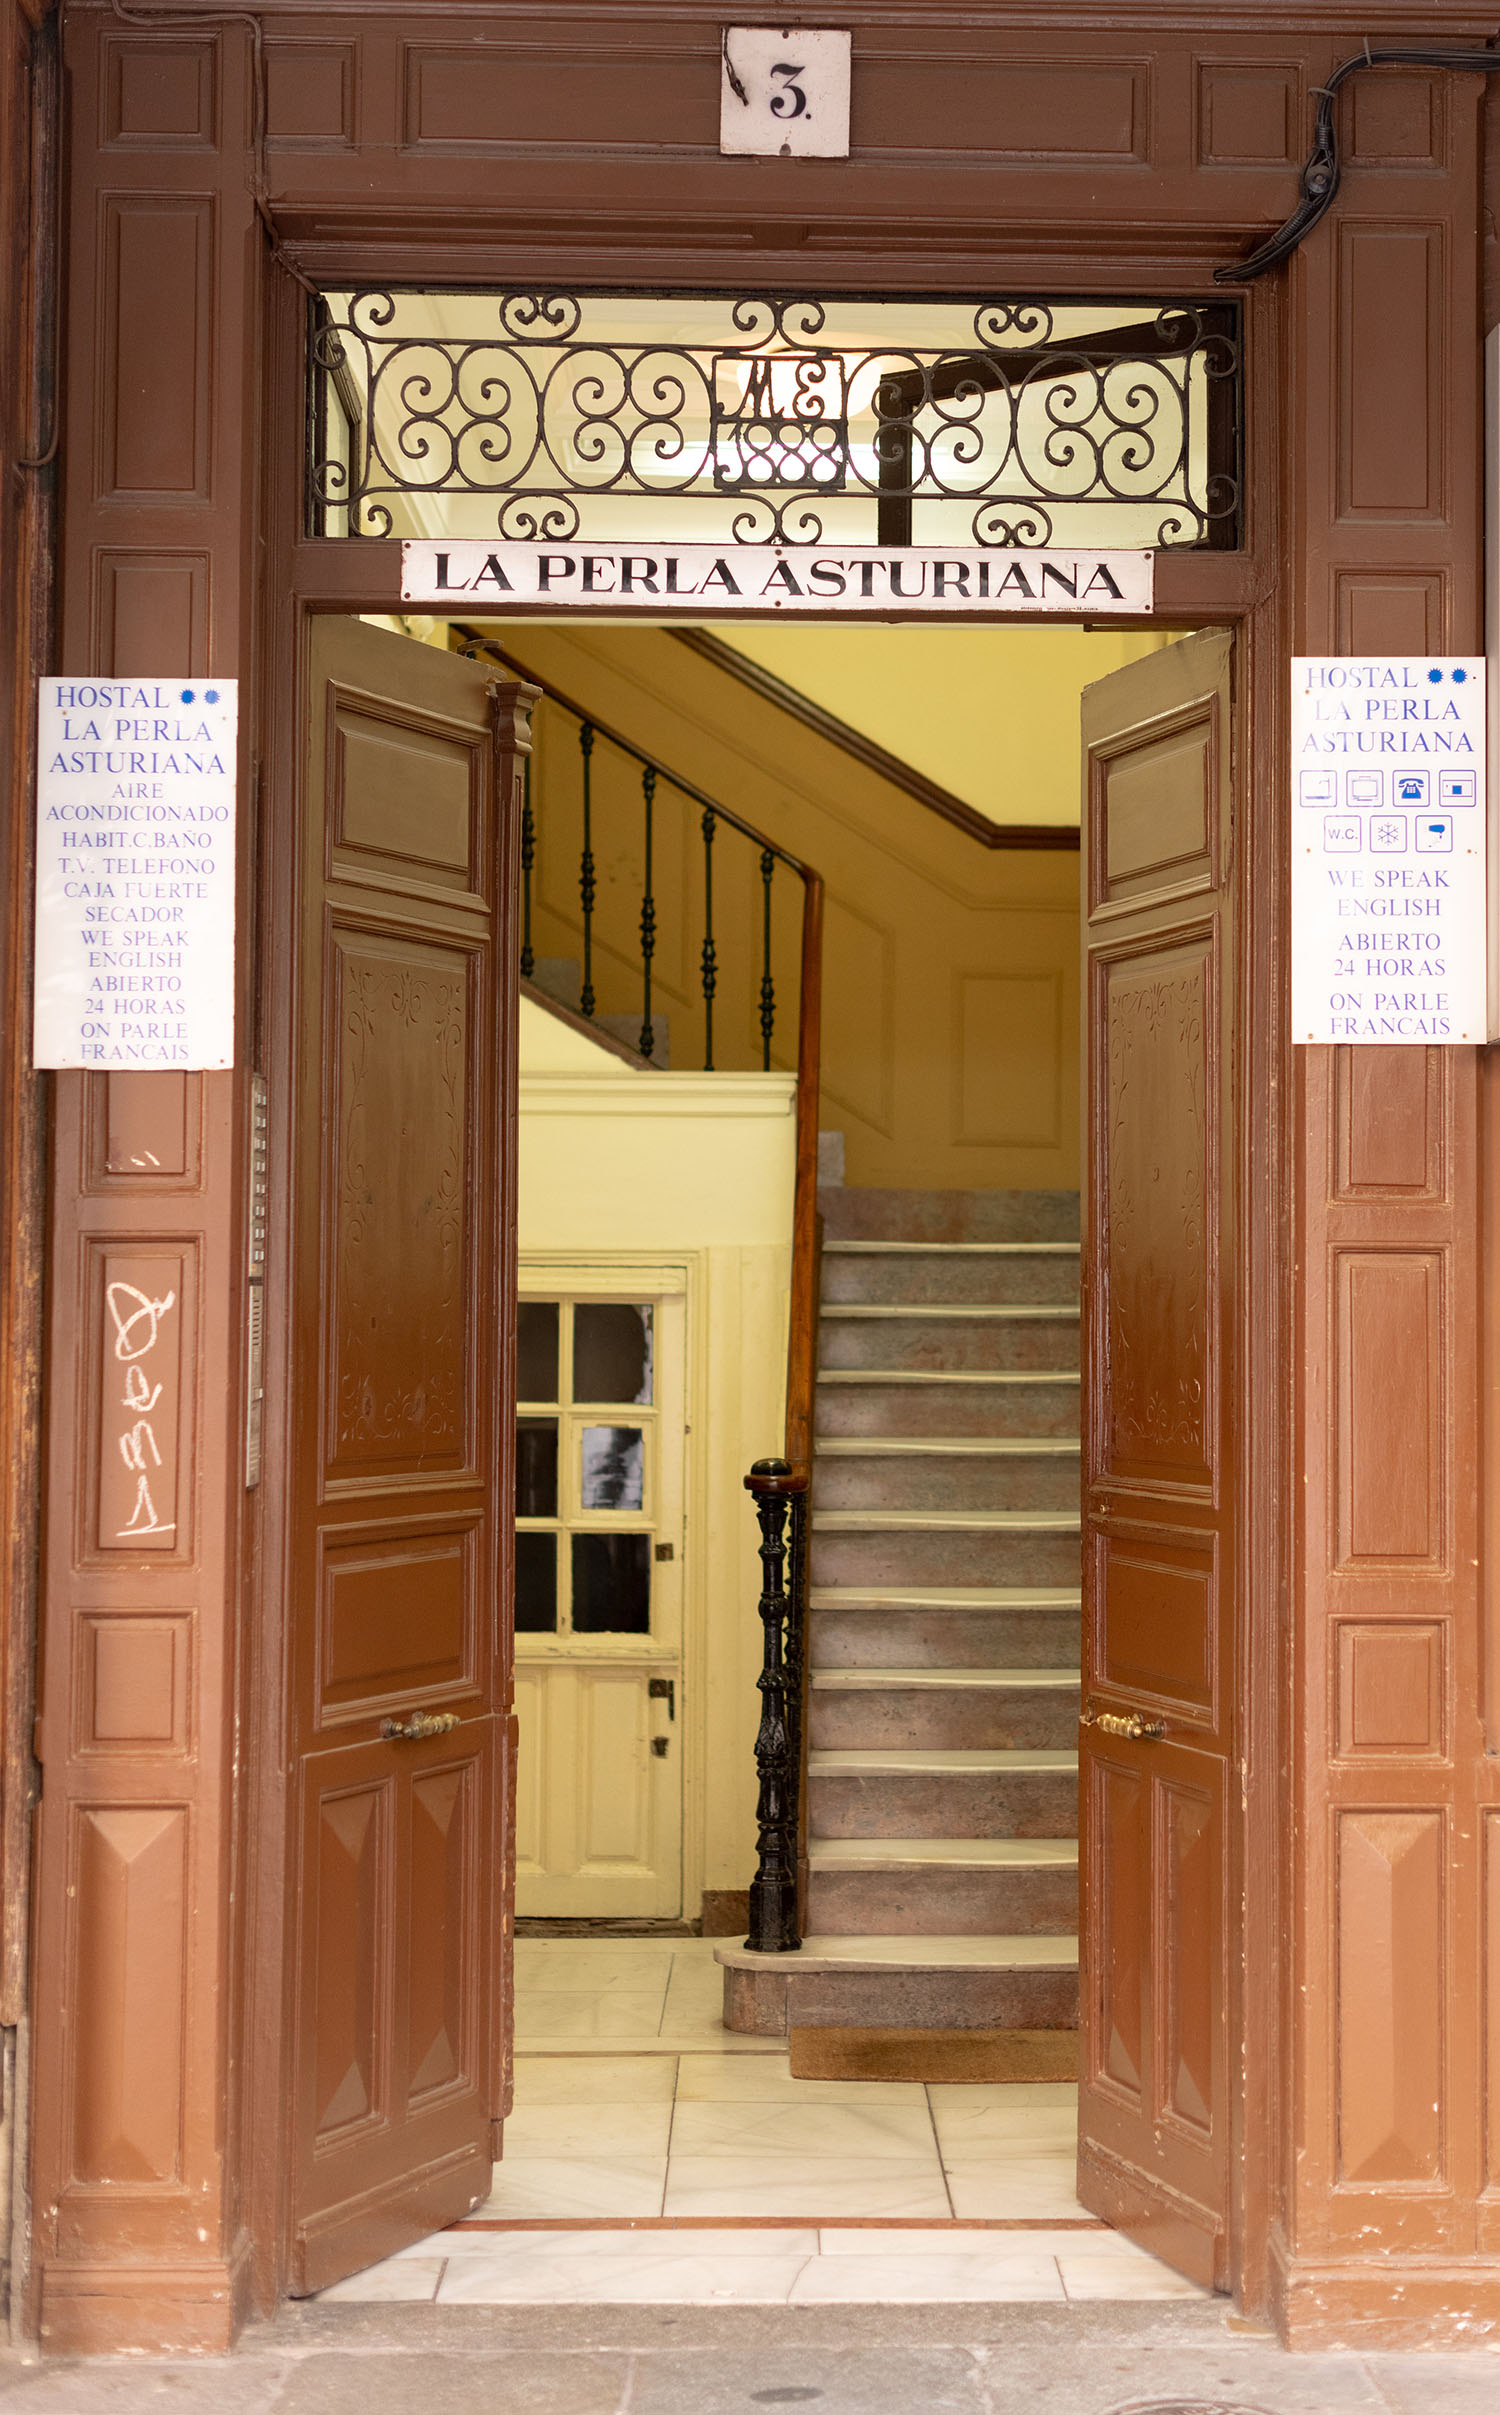 Coco & Voltaire - Entryway to La Perla Asturiana Hostel in Madrid, Spain